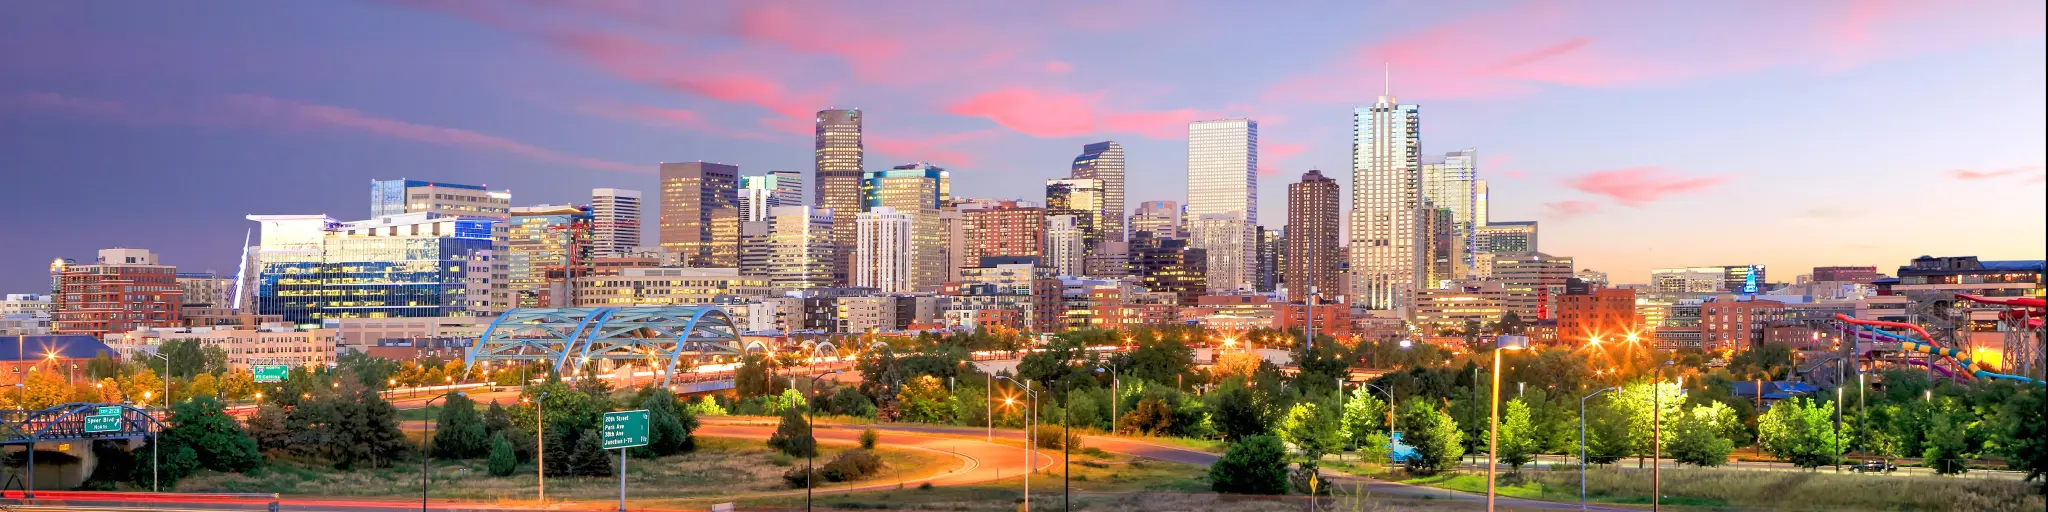 Denver, Colorado, USA  taken as a panorama of Denver skyline long exposure at twilight.